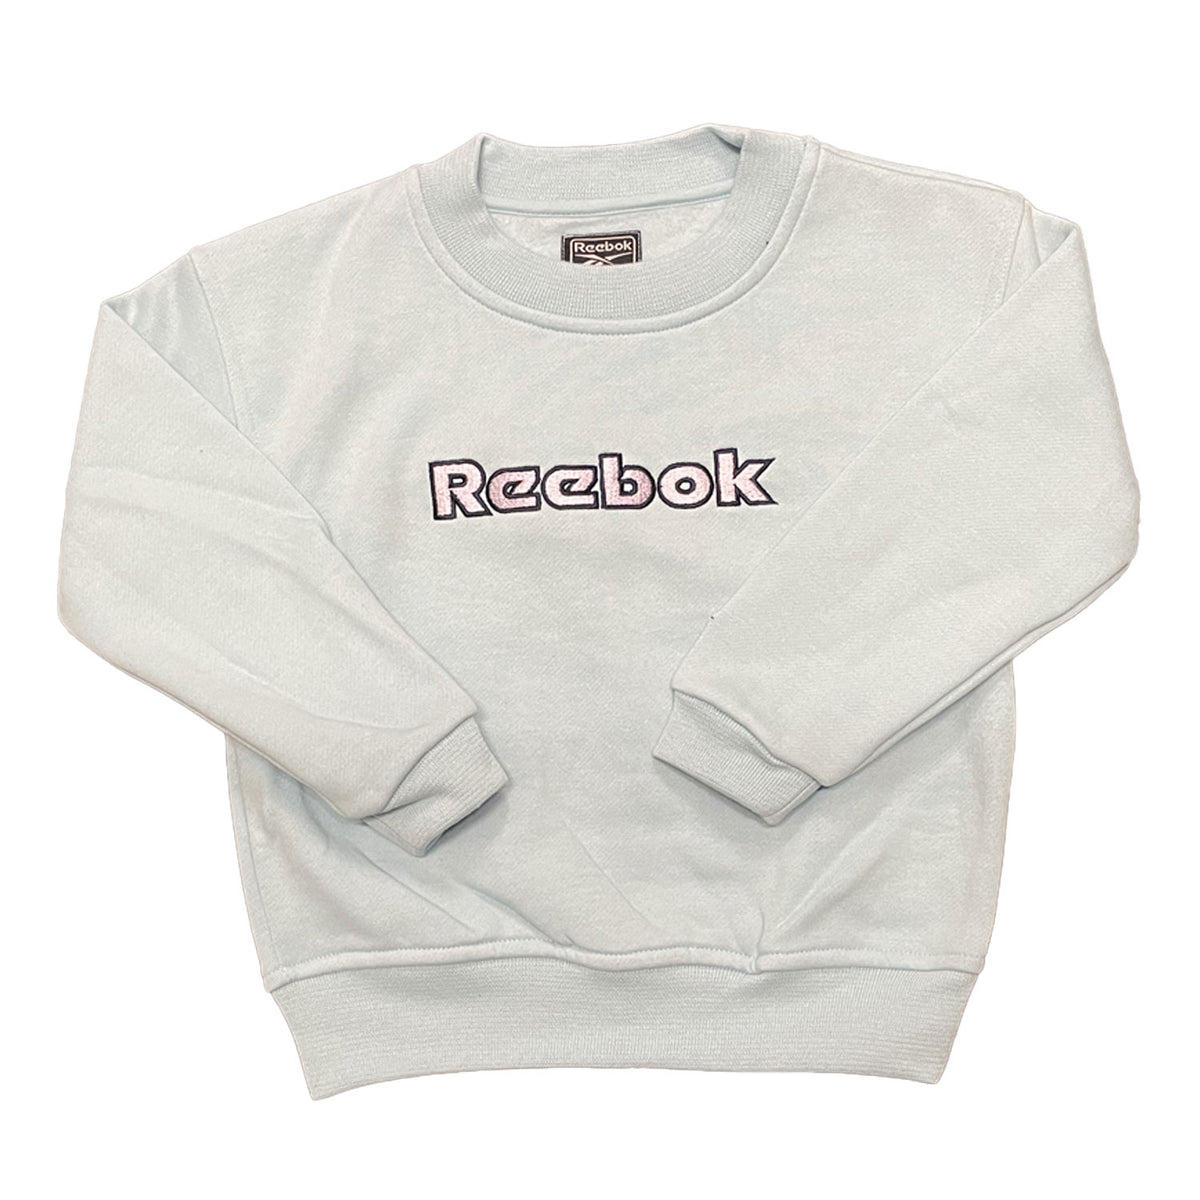 Reebok's Infant Sports Sweatshirt 3